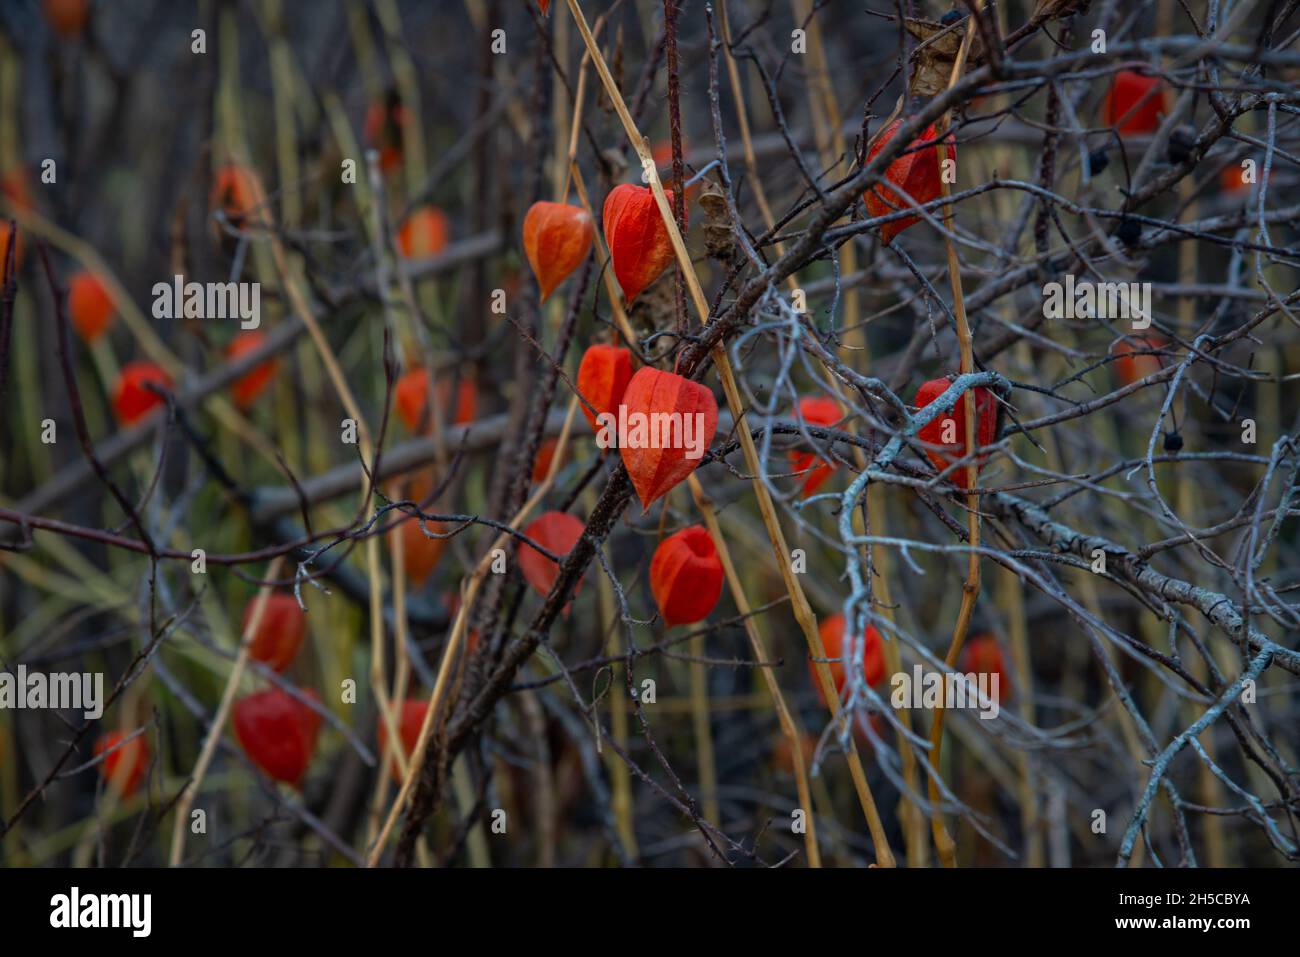 Arbusto rosso maturo autunno fiorito ramo. Foto di cespugli nella natura in una giornata di sole autunno. Il concetto di vita sana. Foto Stock